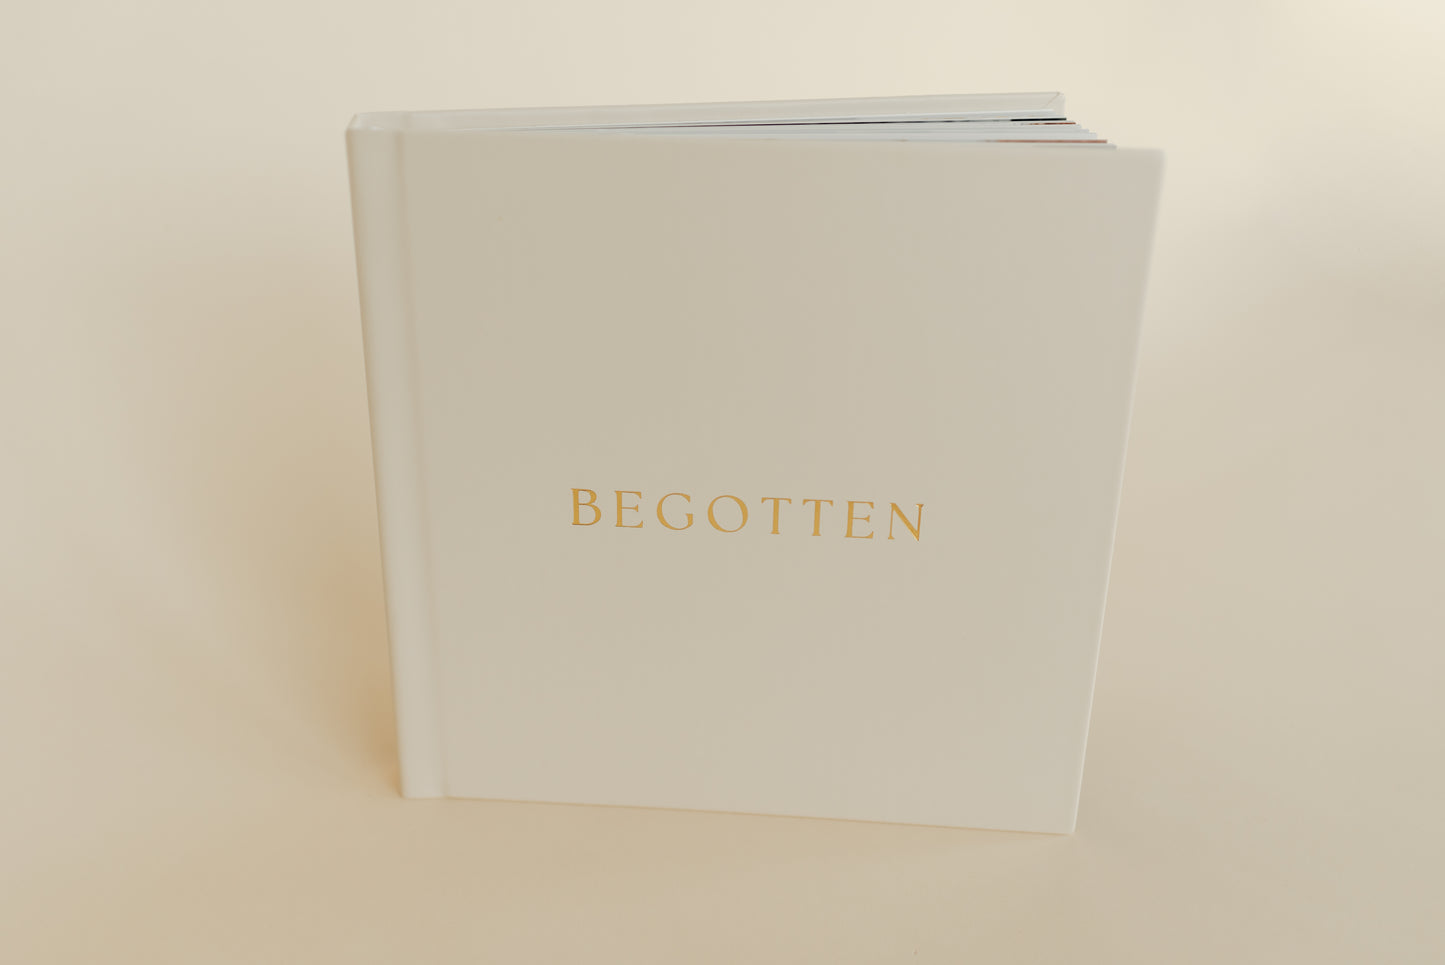 Begotten: Images of Jesus Christ